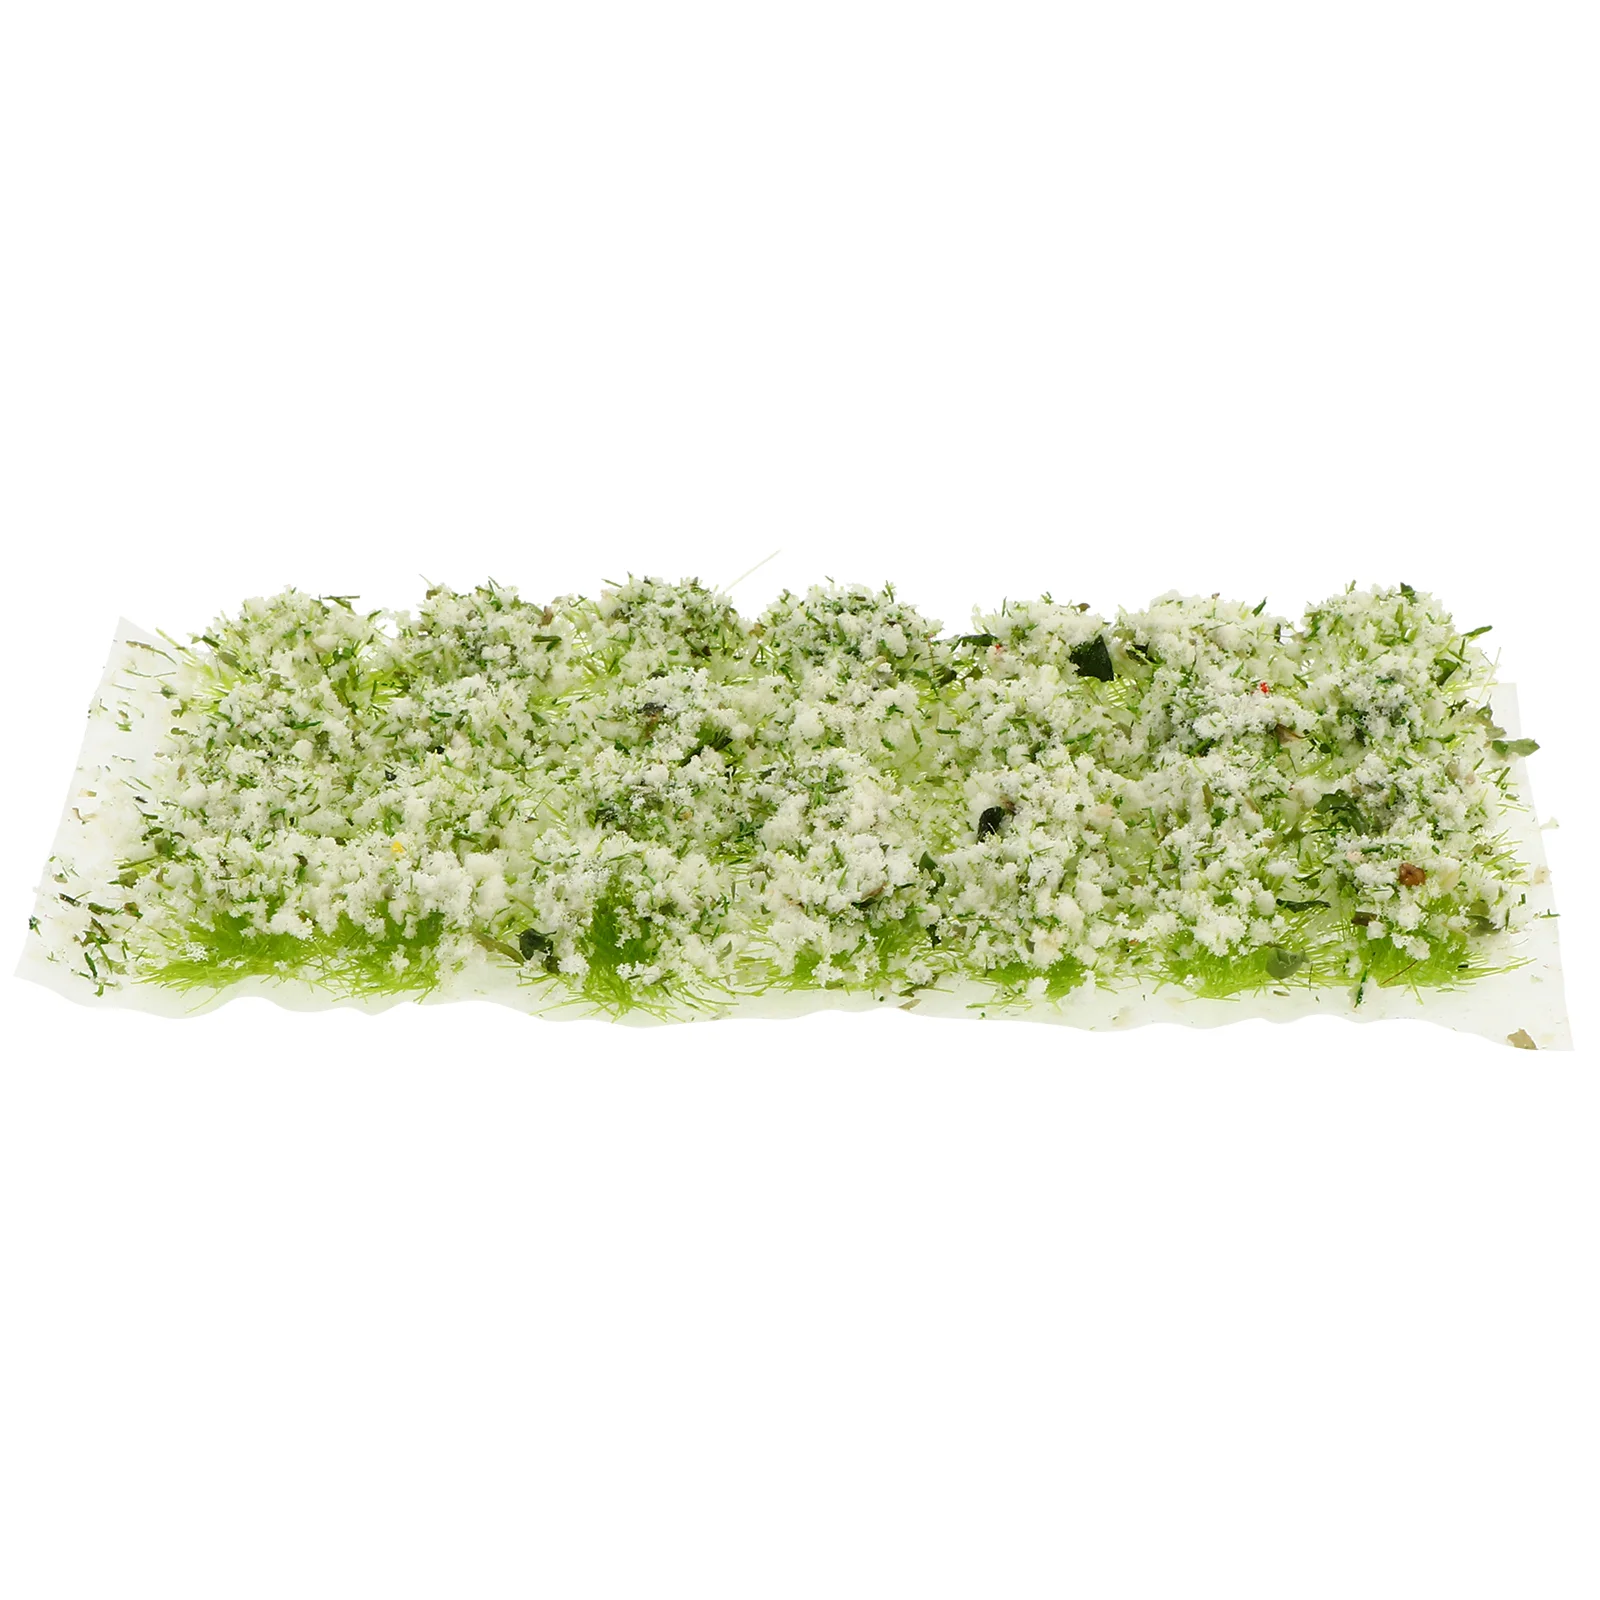 

Искусственная Мини Трава песочный стол DIY Материал зеленые листья Декор имитация лужайки